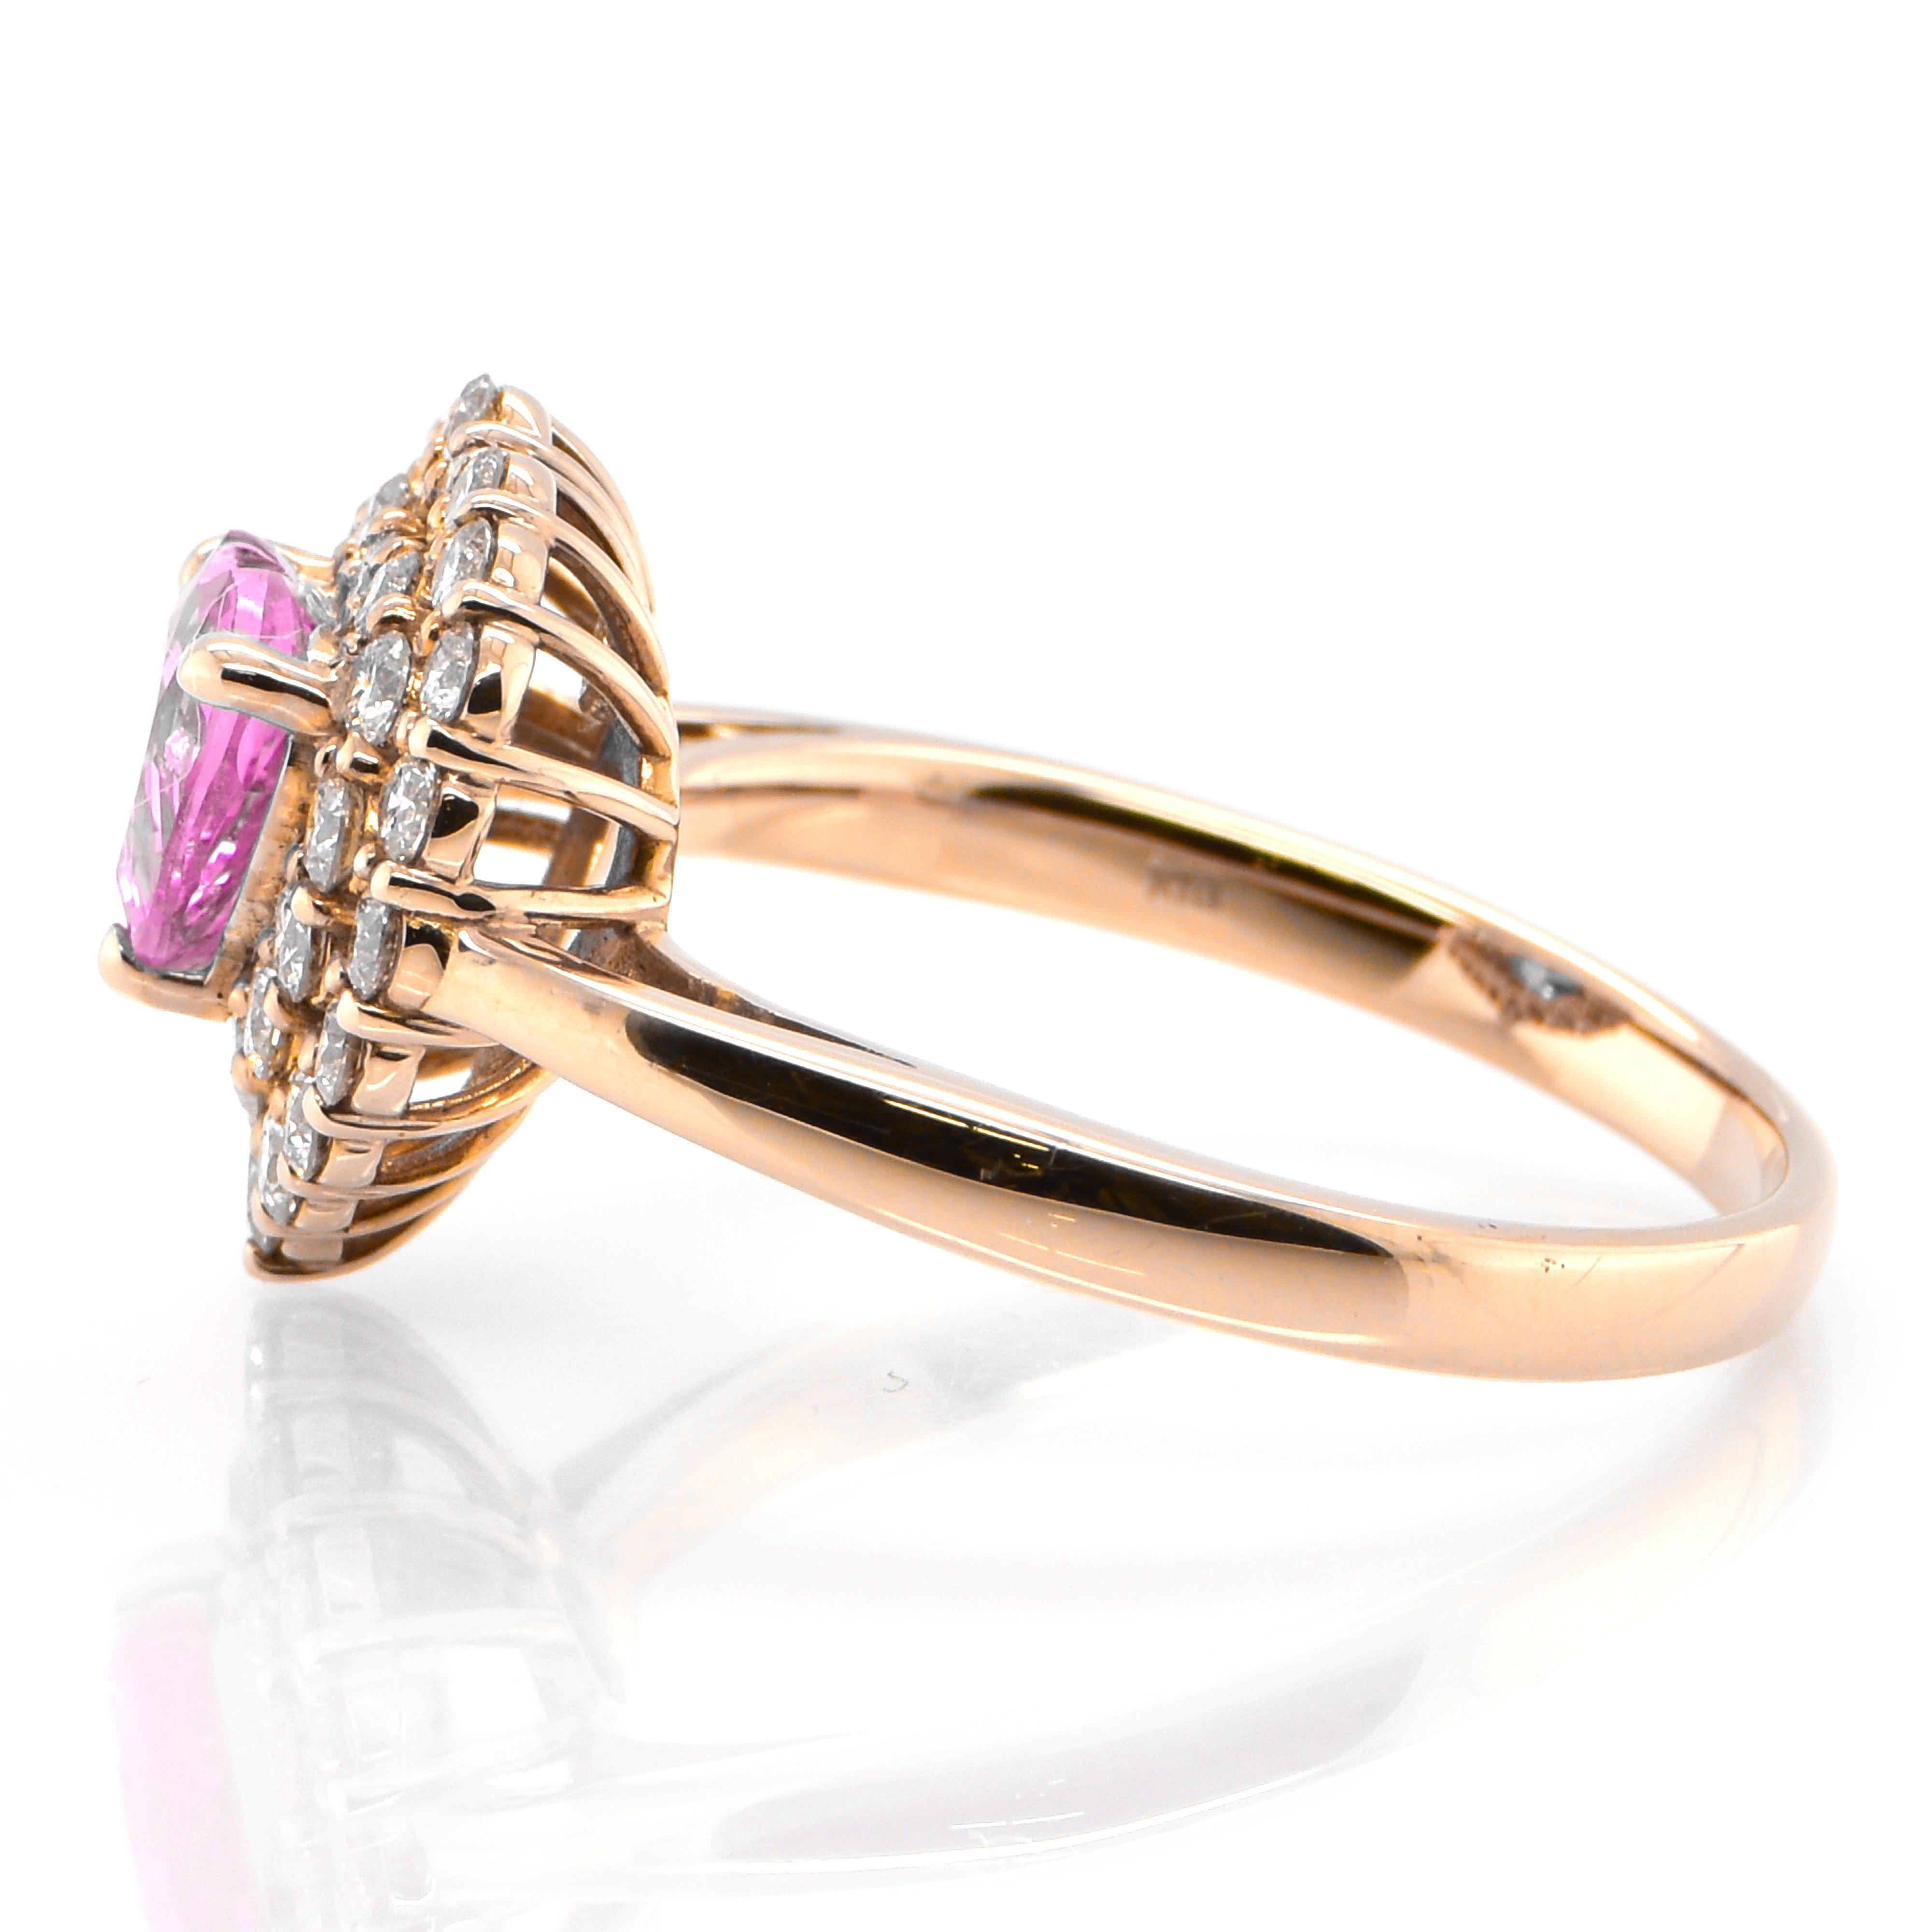 Heart Cut 1.06 Carat Heart-Cut Pink Sapphire and Diamond Ring Set in 18 Karat Pink Gold